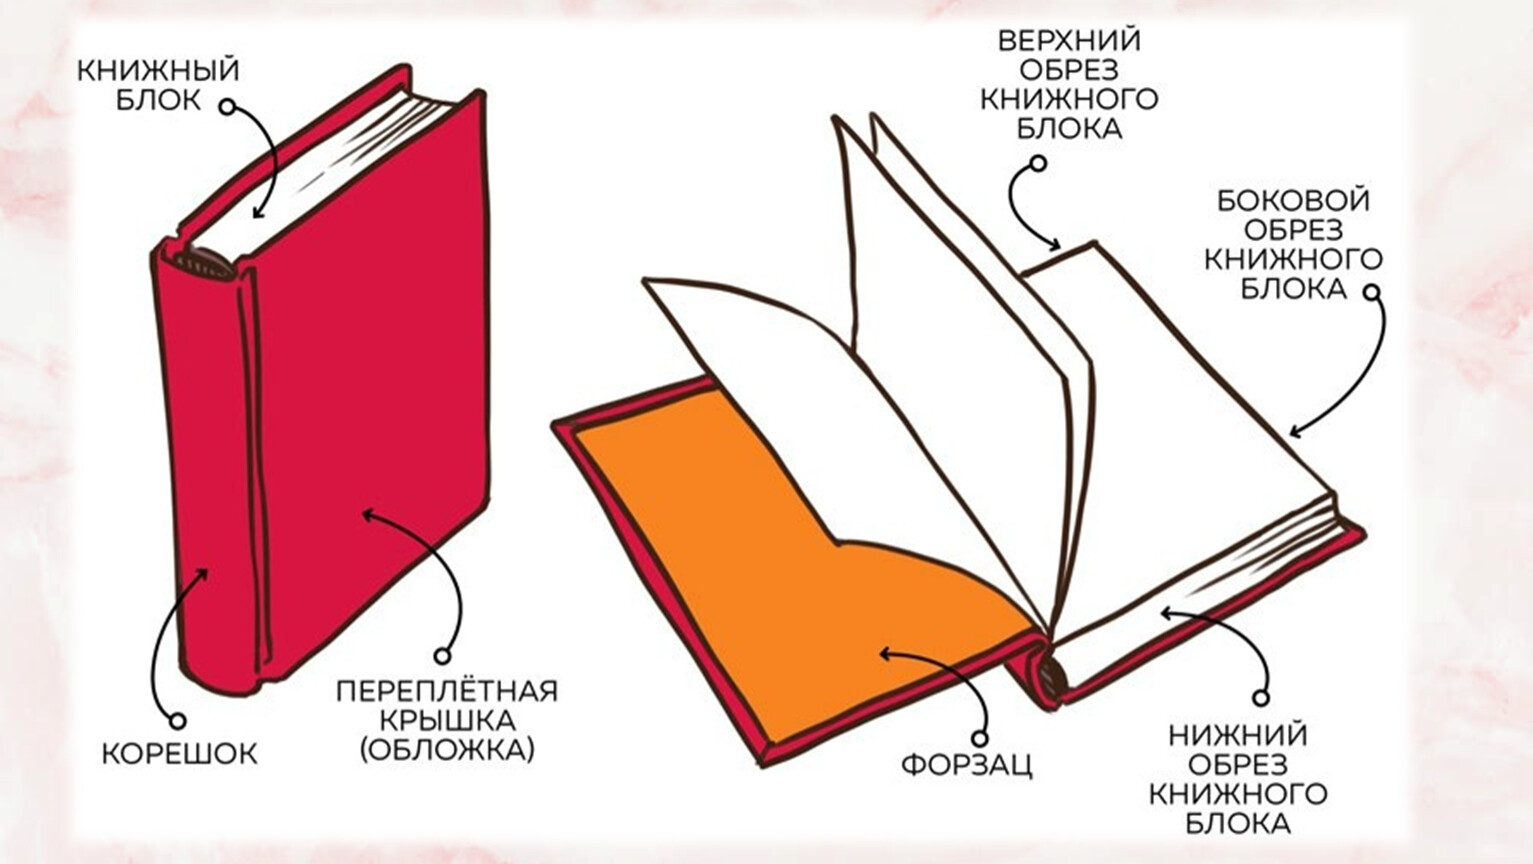 Статья учебник книга книг. Из чего состоит структура книги. Из чего состоит книга схема для детей. Как называется часть книги сбоку. Как называется часть книги корешок.